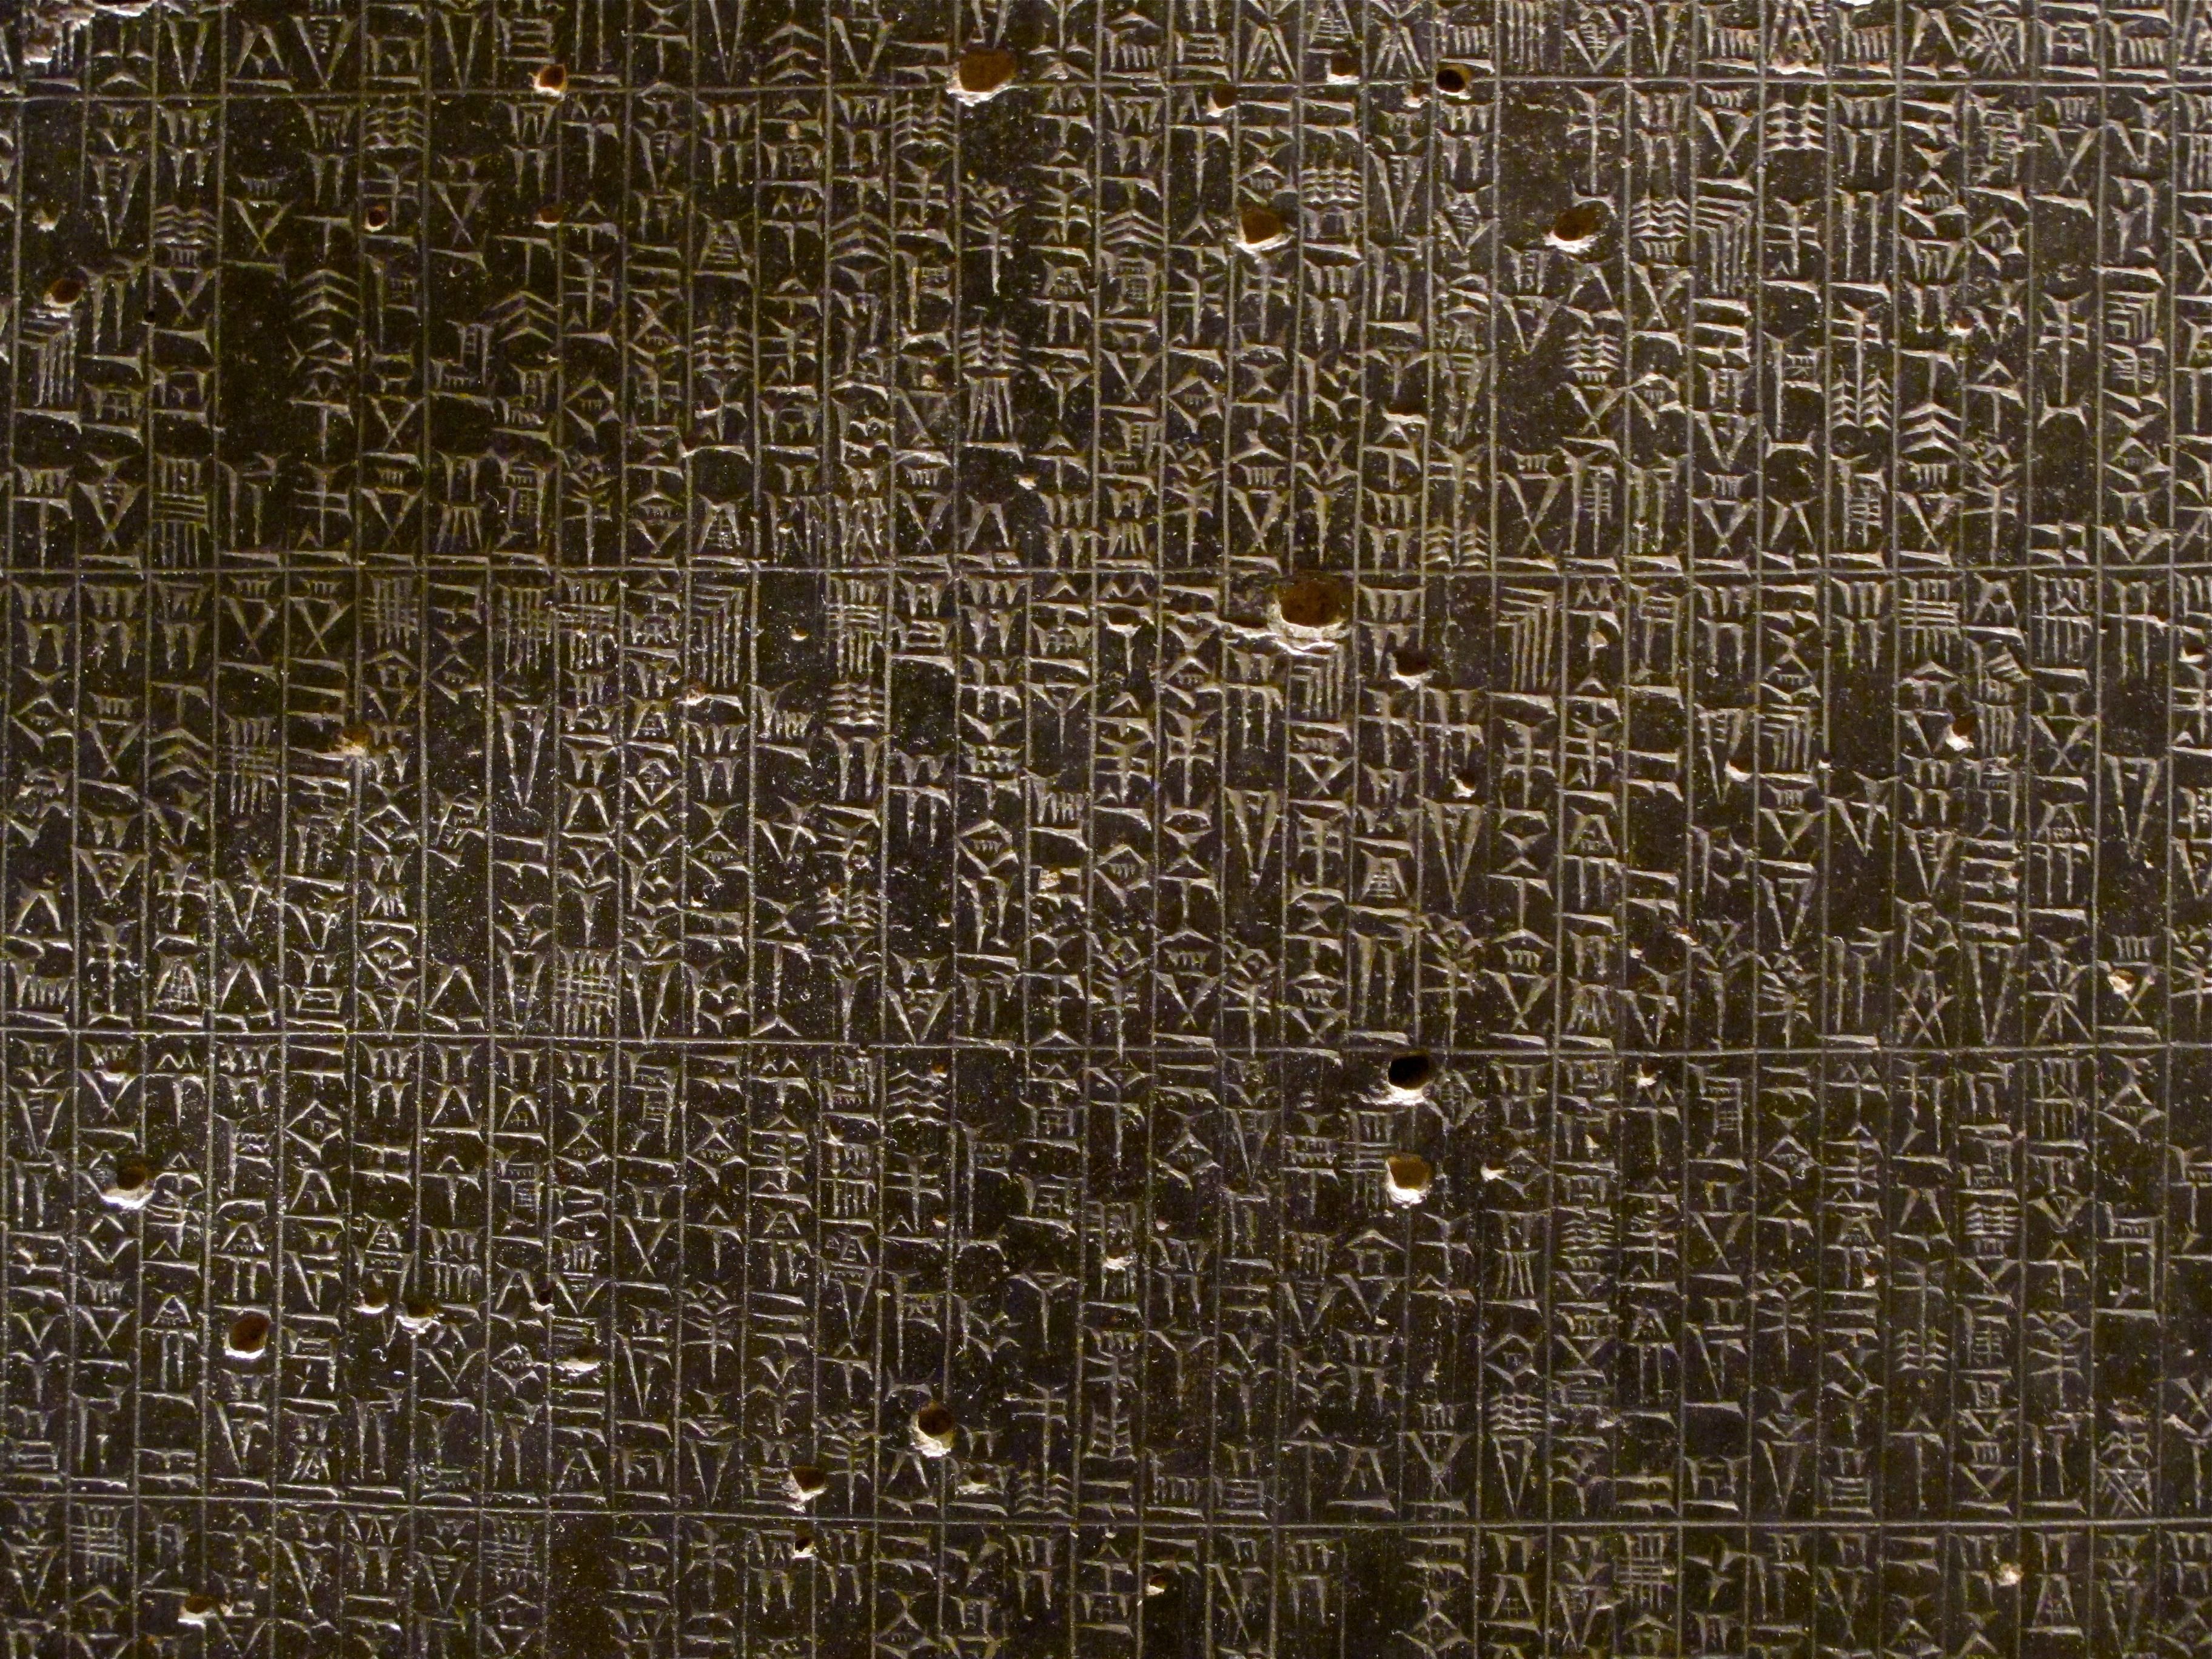 Code of Hammurabi created 'innocent until proven guilty' - Upworthy